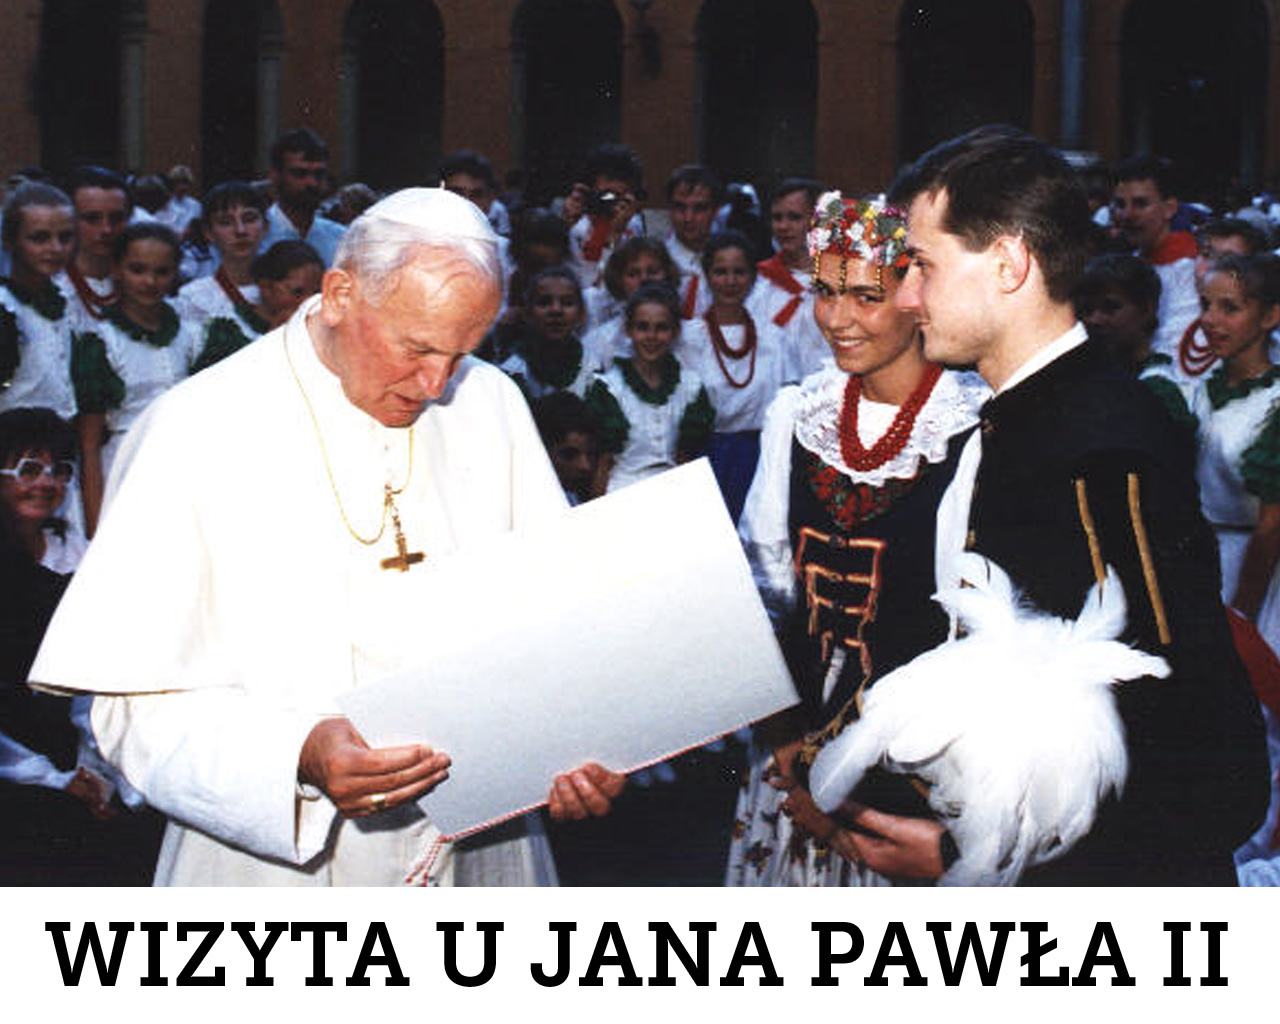 Wizyta u Jana Pawła II, Watykan, 1991 r.